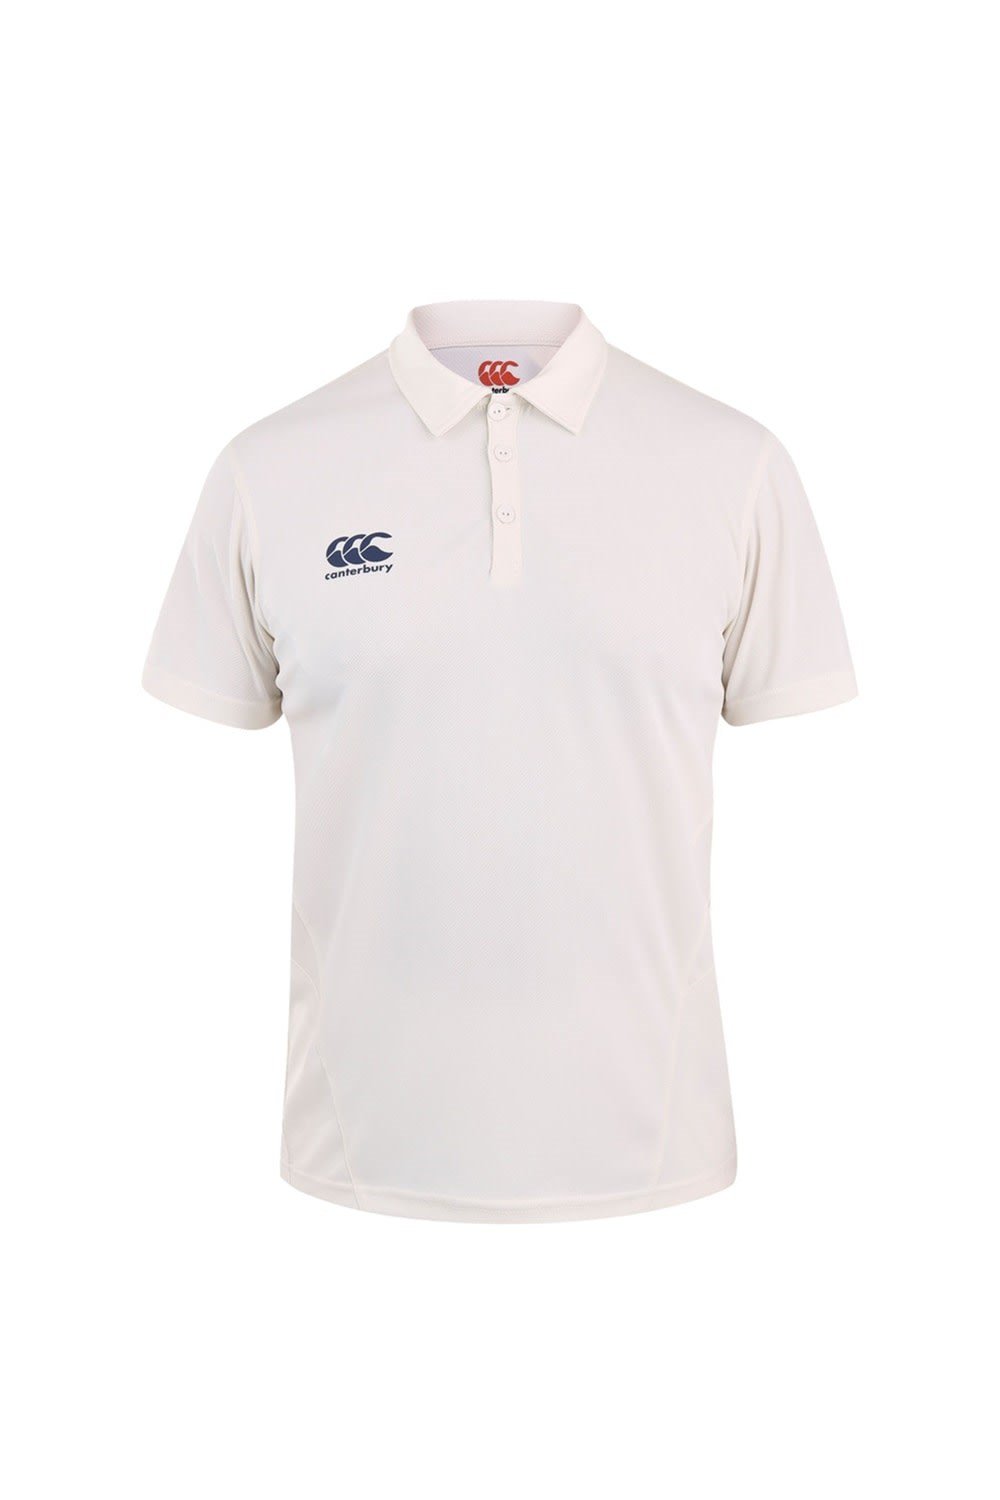 Kids Short Sleeve Cricket Shirt -